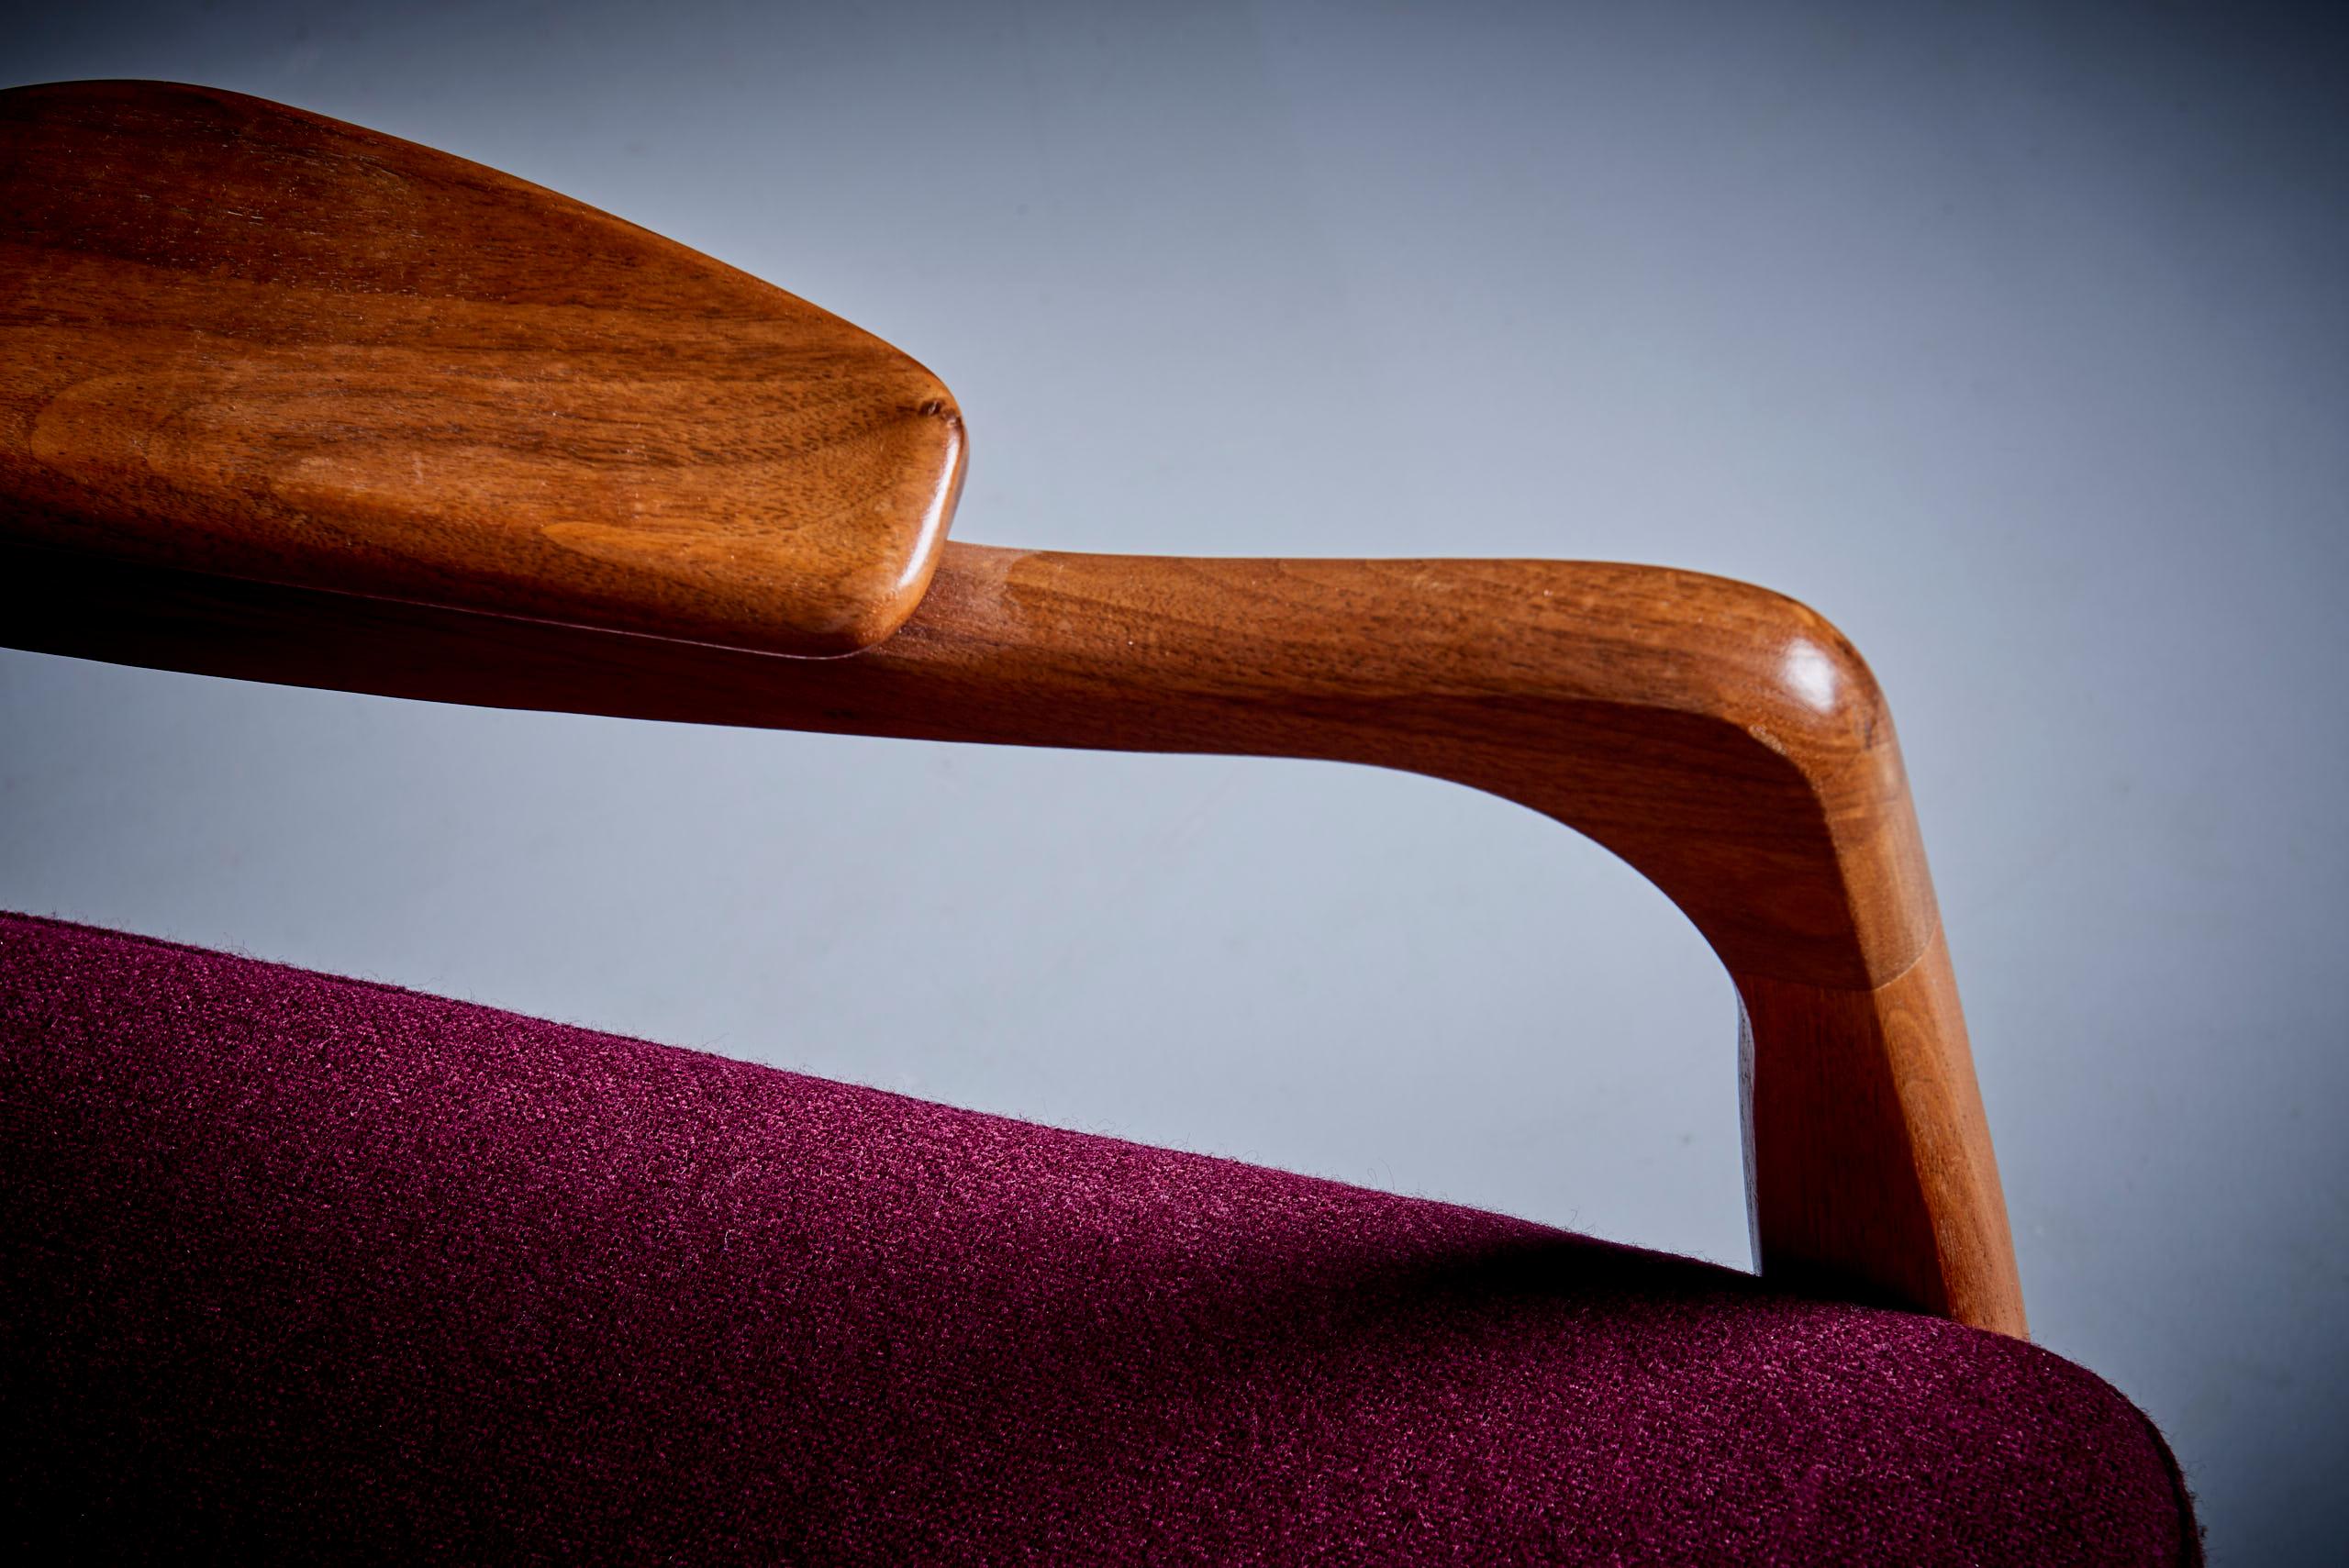 Dieser von Adrian Pearsall für Craft Associates entworfene Ohrensessel ist ein wunderschönes Design, das mit Sicherheit für Gesprächsstoff sorgen wird. Gepolstert mit Dedar Stoff. Das ist die Antwort von Adrian Pearsall auf den Papa-Bär-Stuhl.